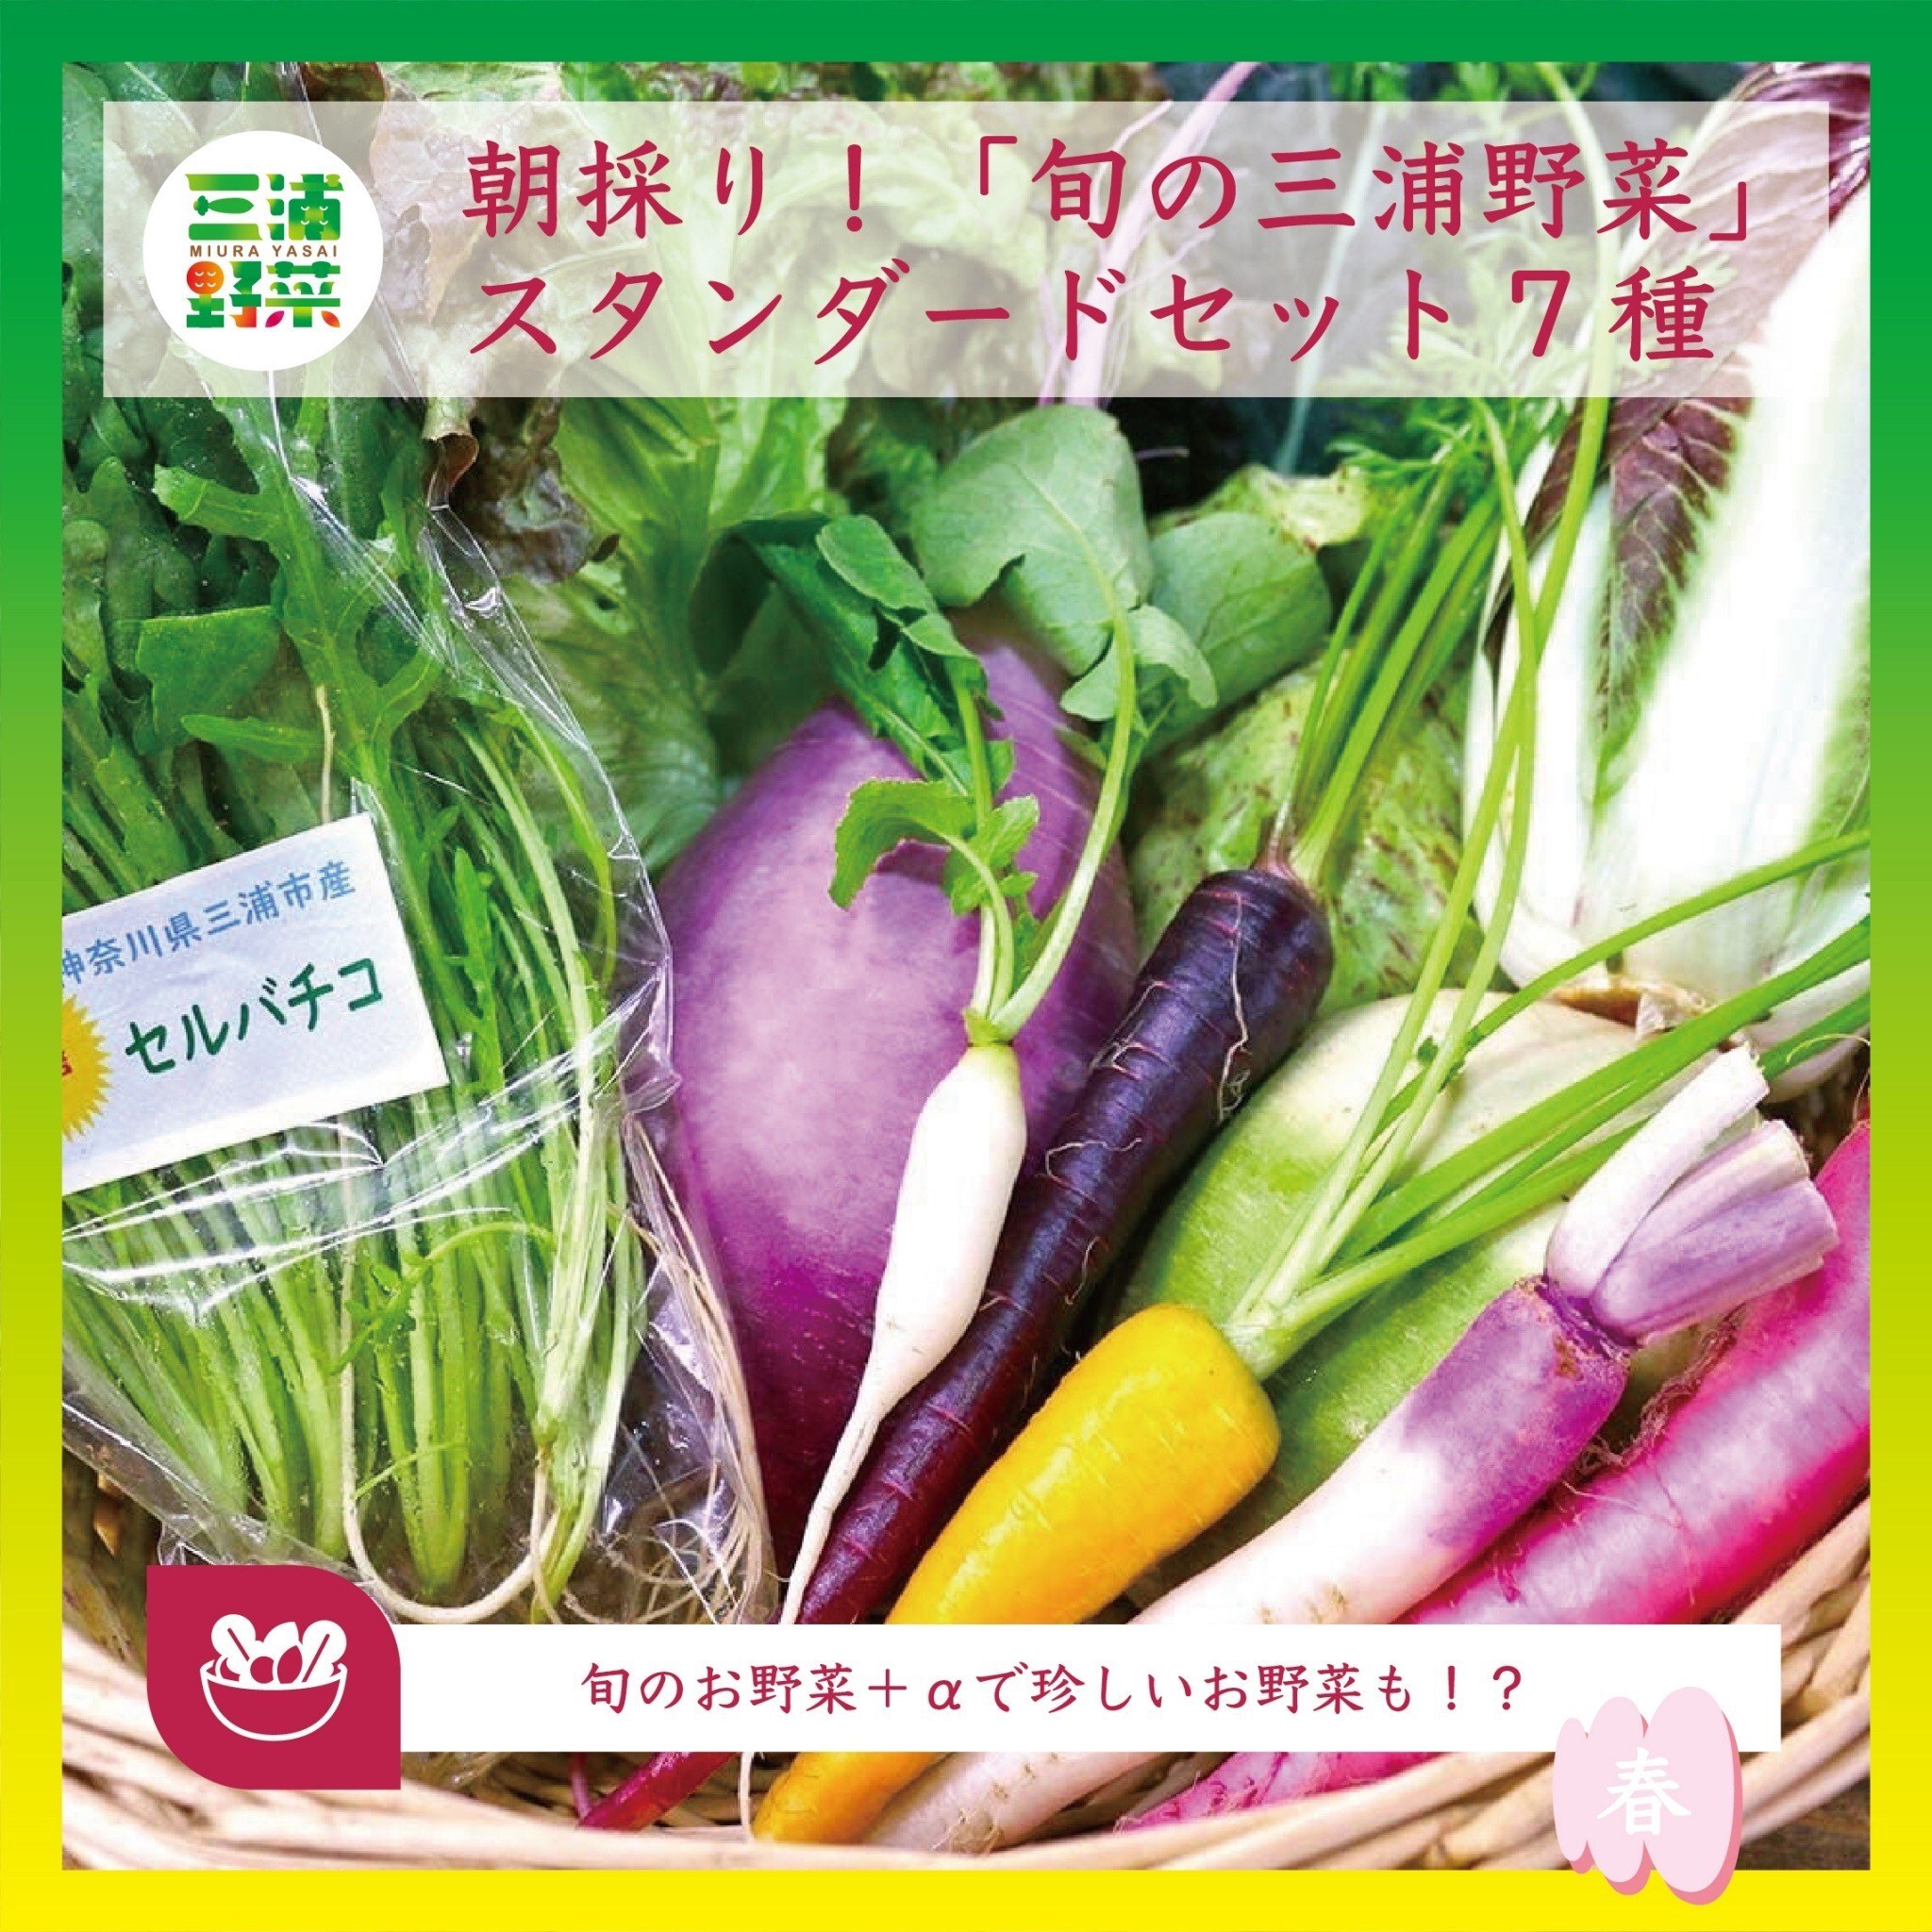 三浦野菜の魅力を全国に知ってもらいたい 6月1日にクラウドファン 